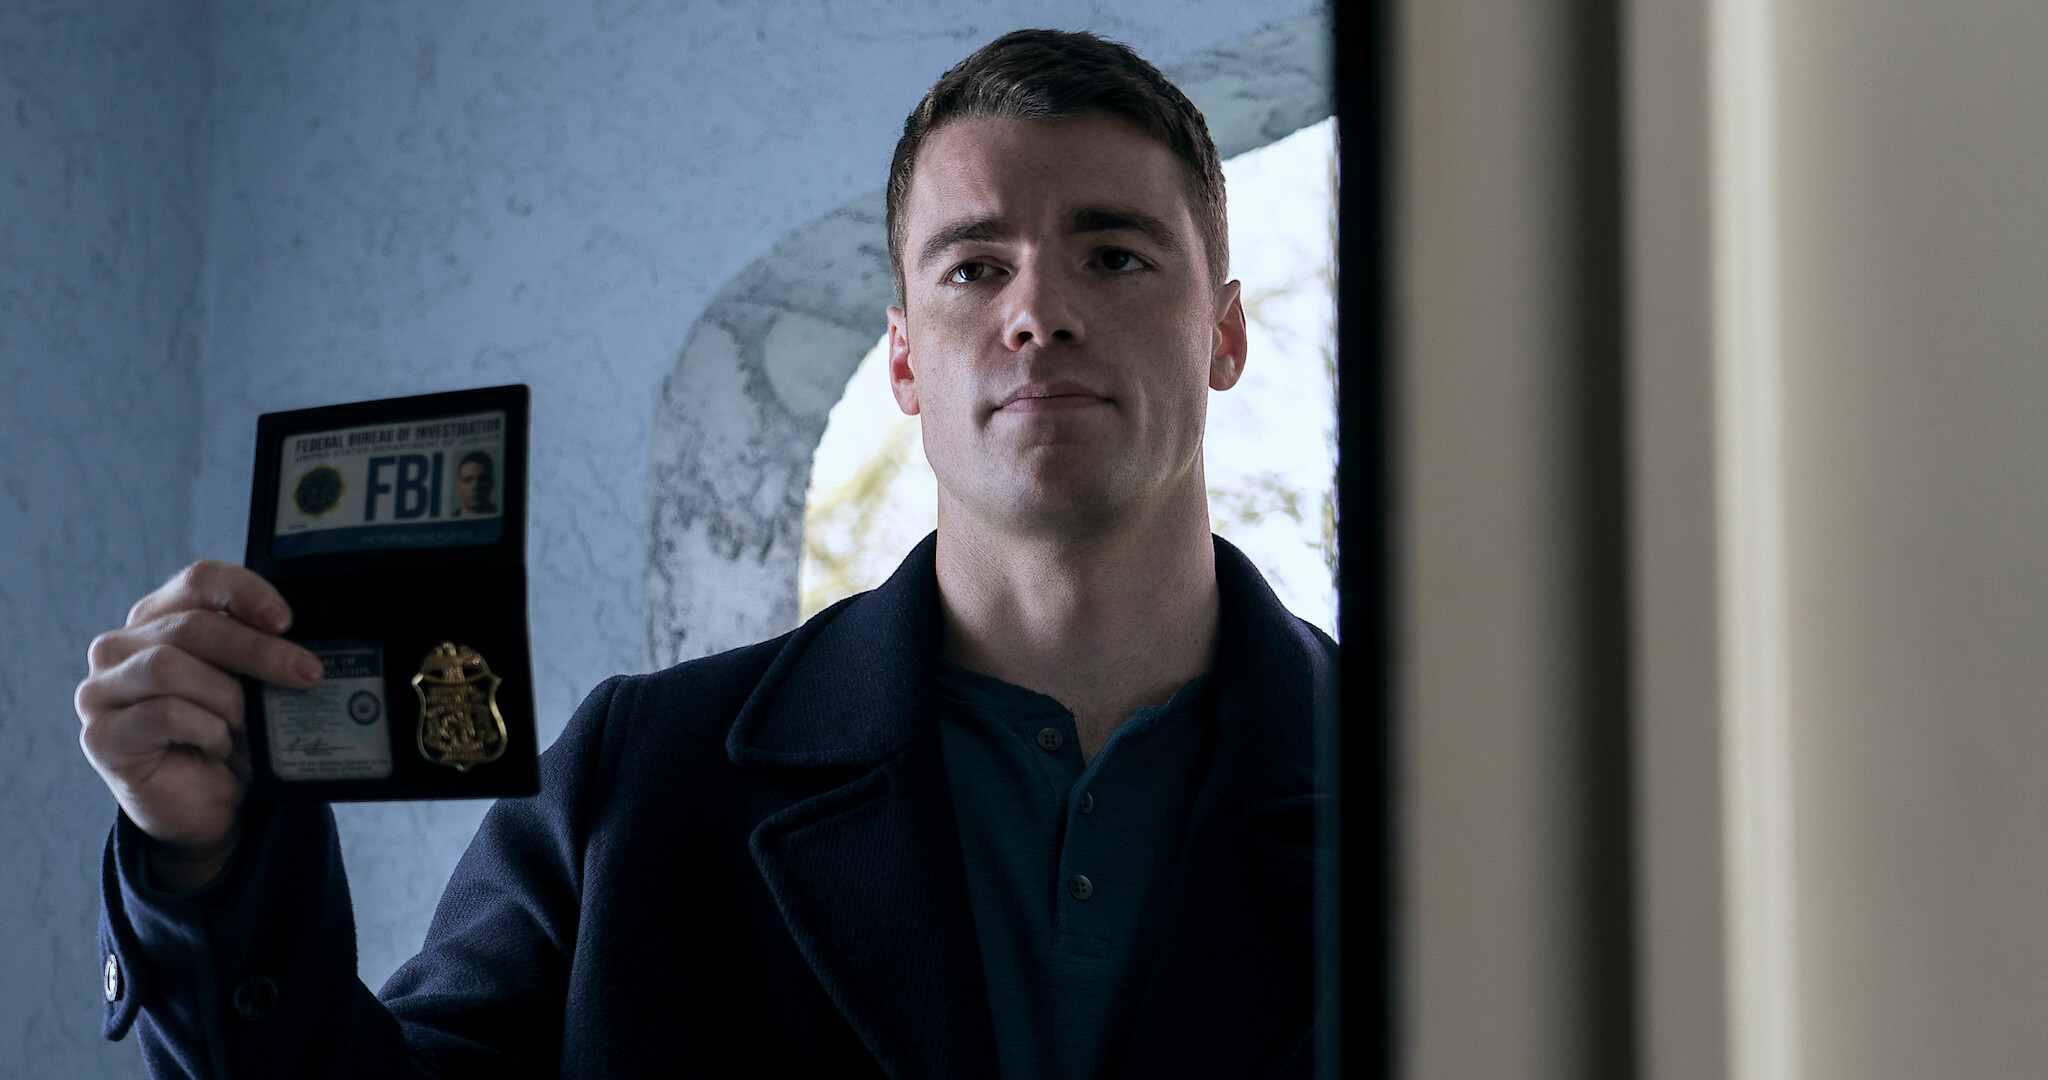 The Night Agent Renewed for Season 2: Showrunner Teases Peter's